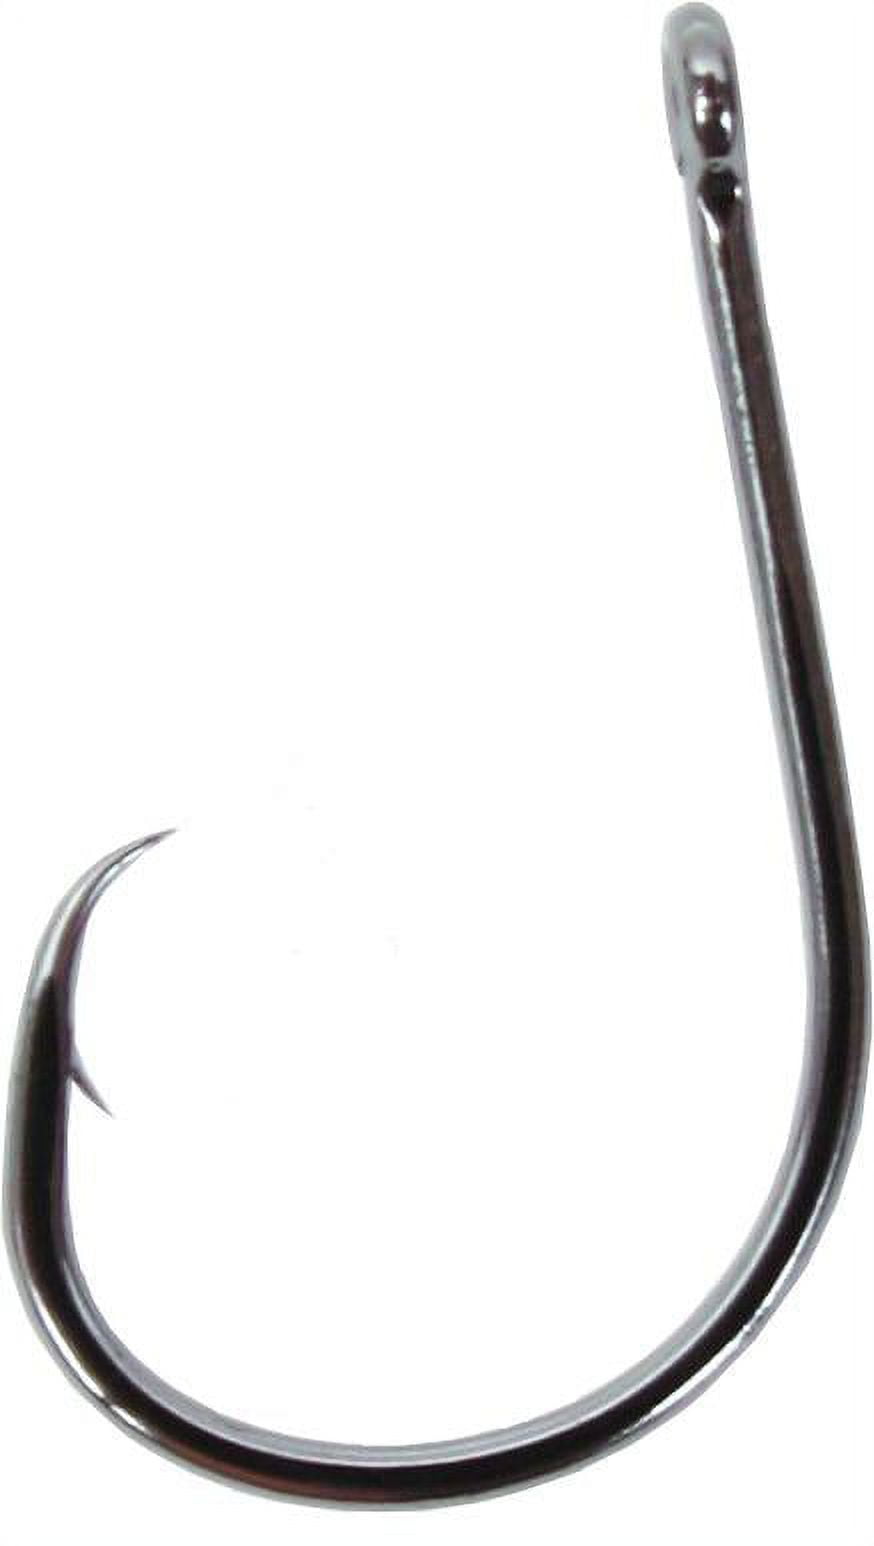 Gamakatsu 265416 Octopus Circle Hook Size 6/0 Needle Point,Ringed